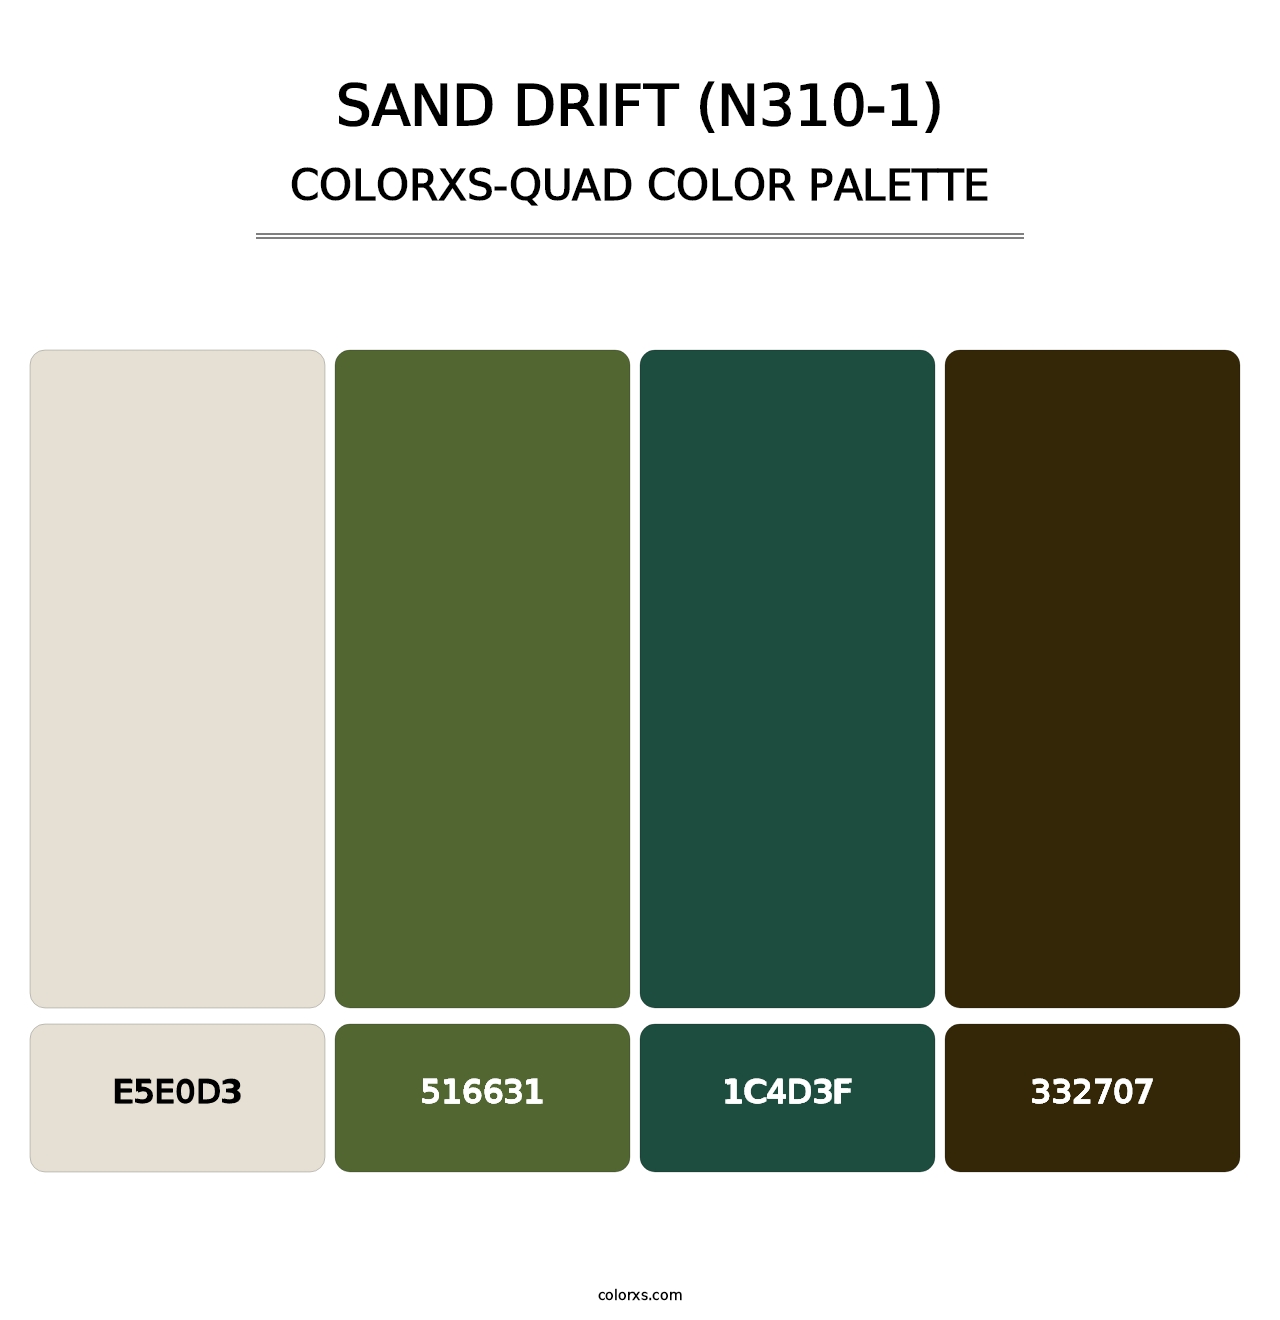 Sand Drift (N310-1) - Colorxs Quad Palette